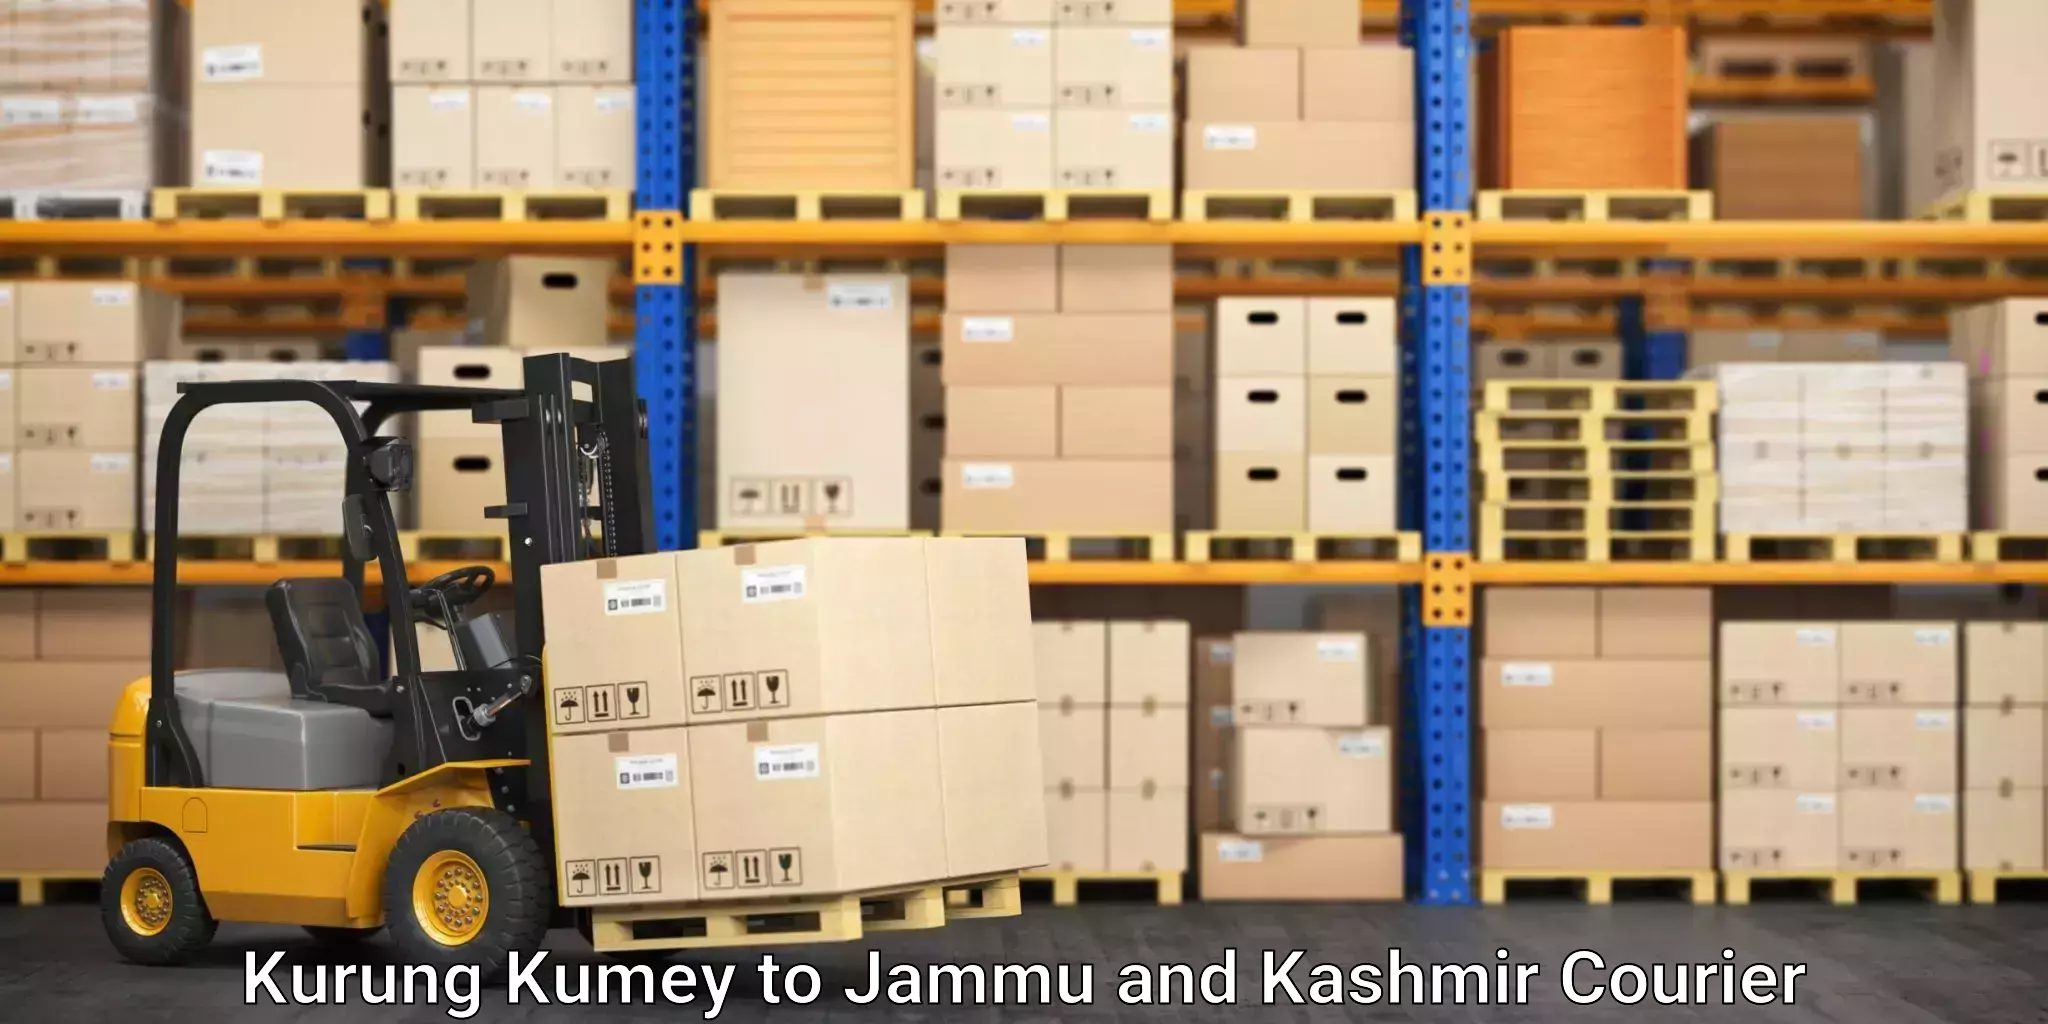 Pharmaceutical courier Kurung Kumey to Jammu and Kashmir